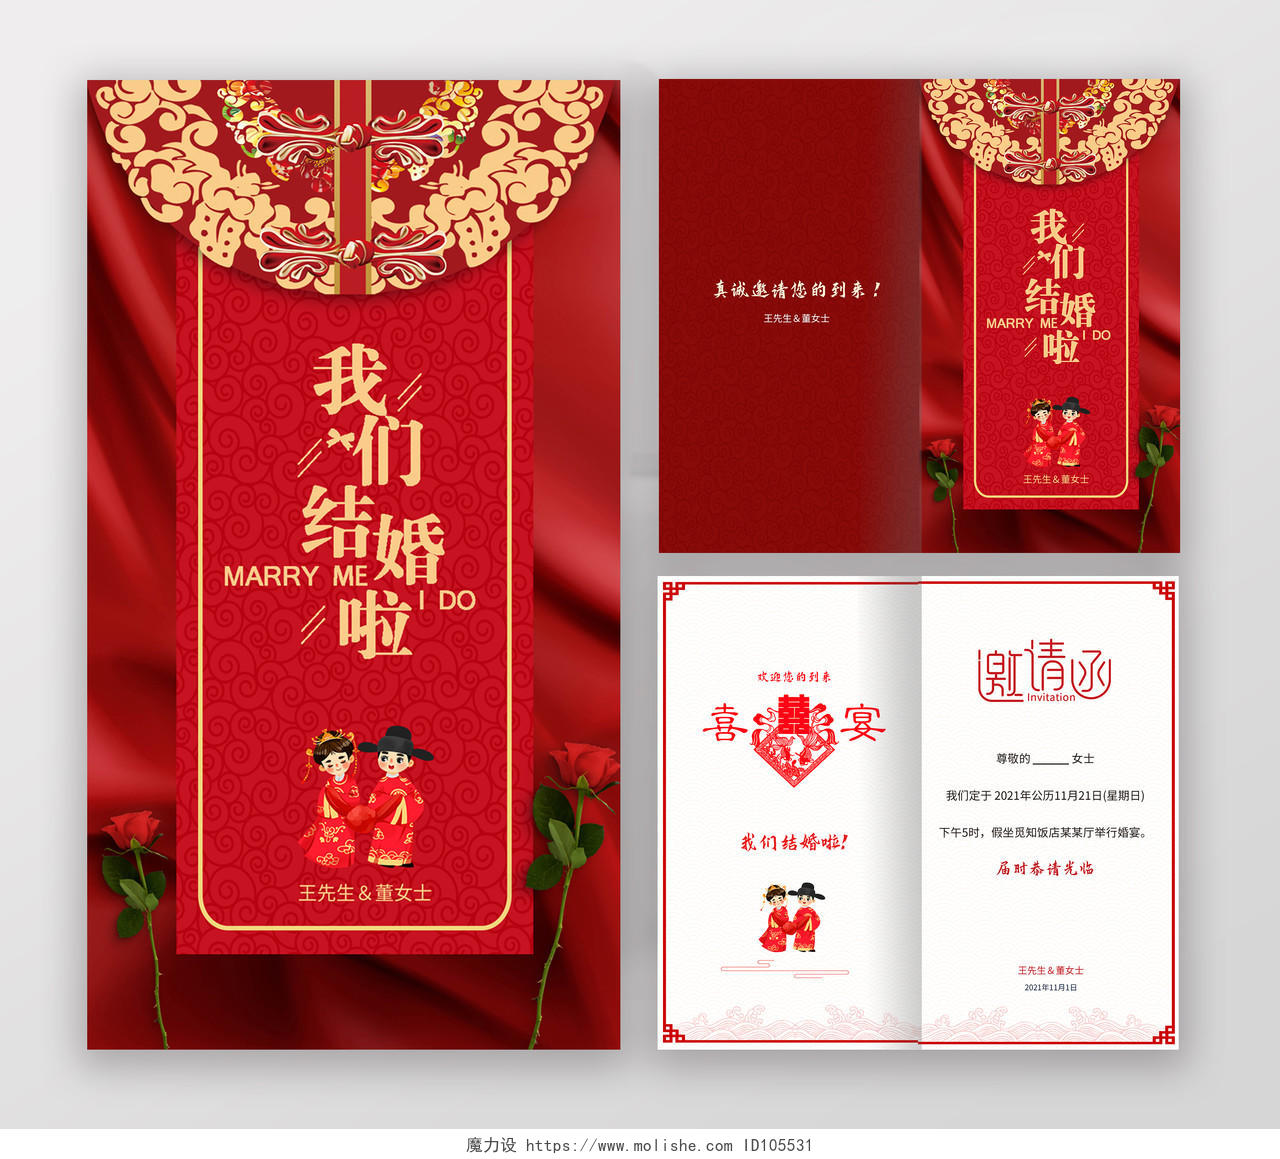 红色中式古典风格结婚喜宴邀请函折页中式婚礼邀请函